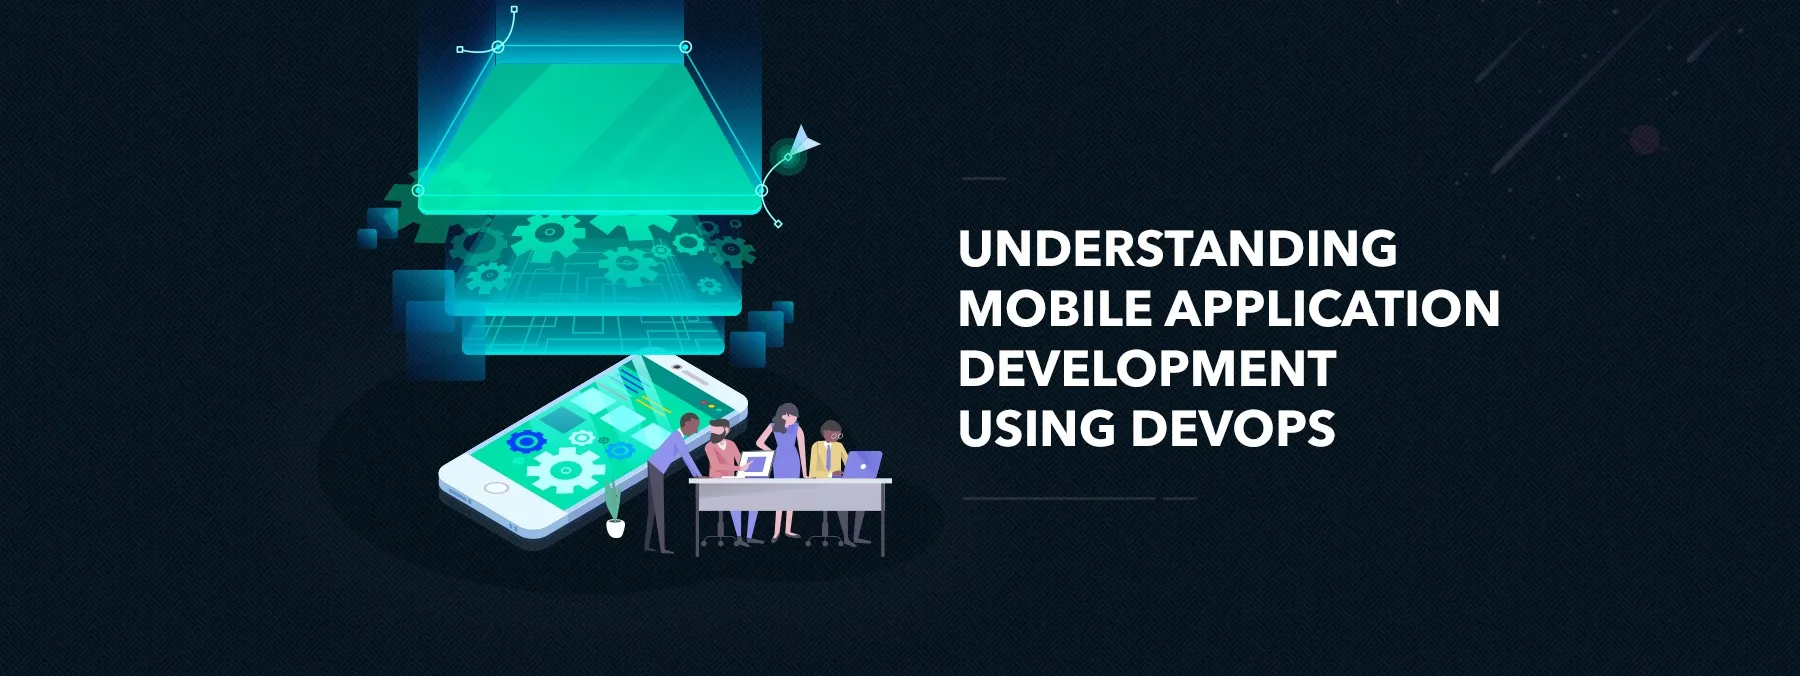 Mobile application development using DevOps